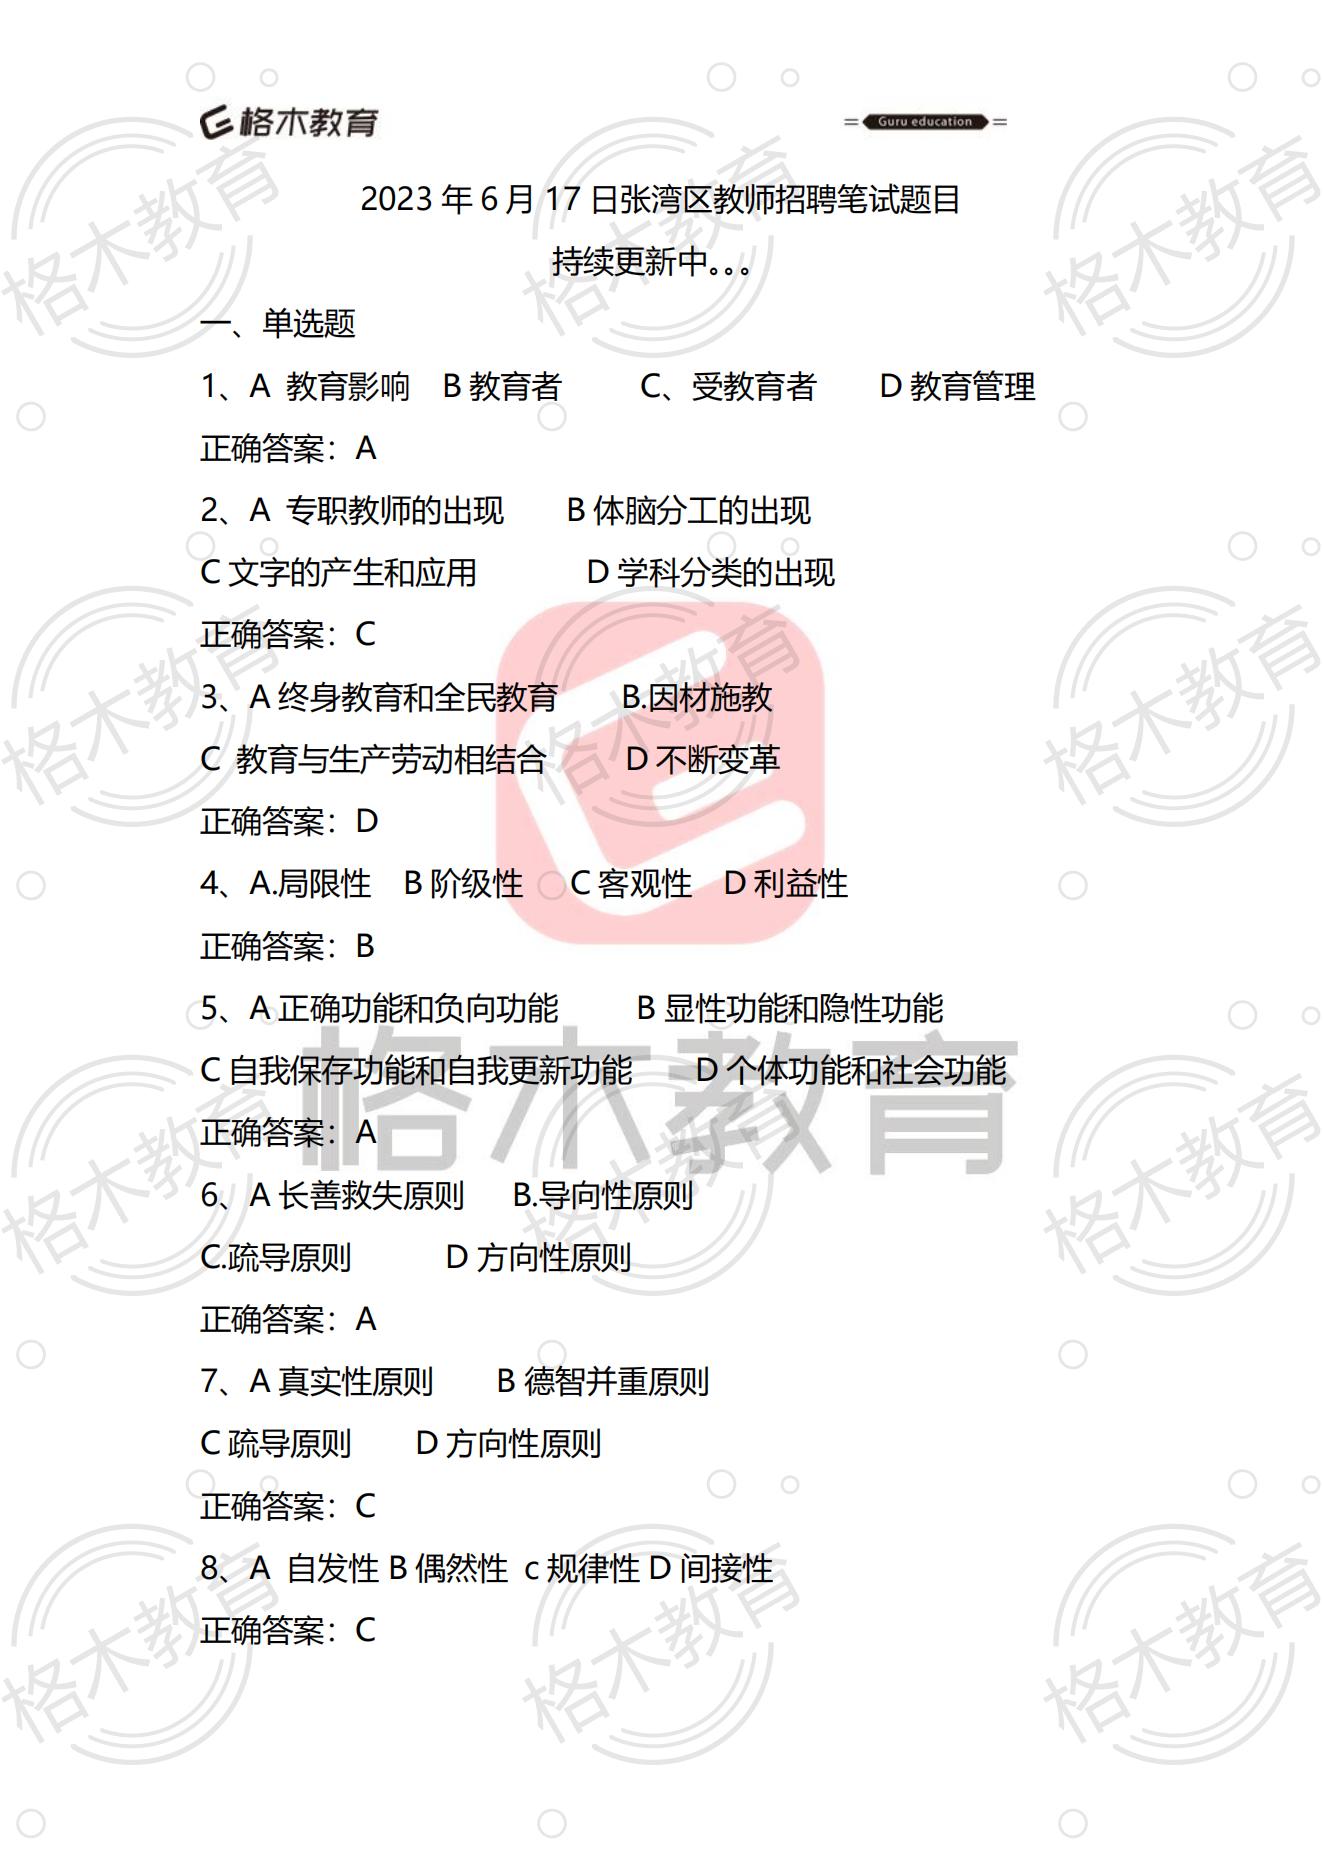 【格木】2023年6月17日十堰市张湾区教师招聘笔试估分图1